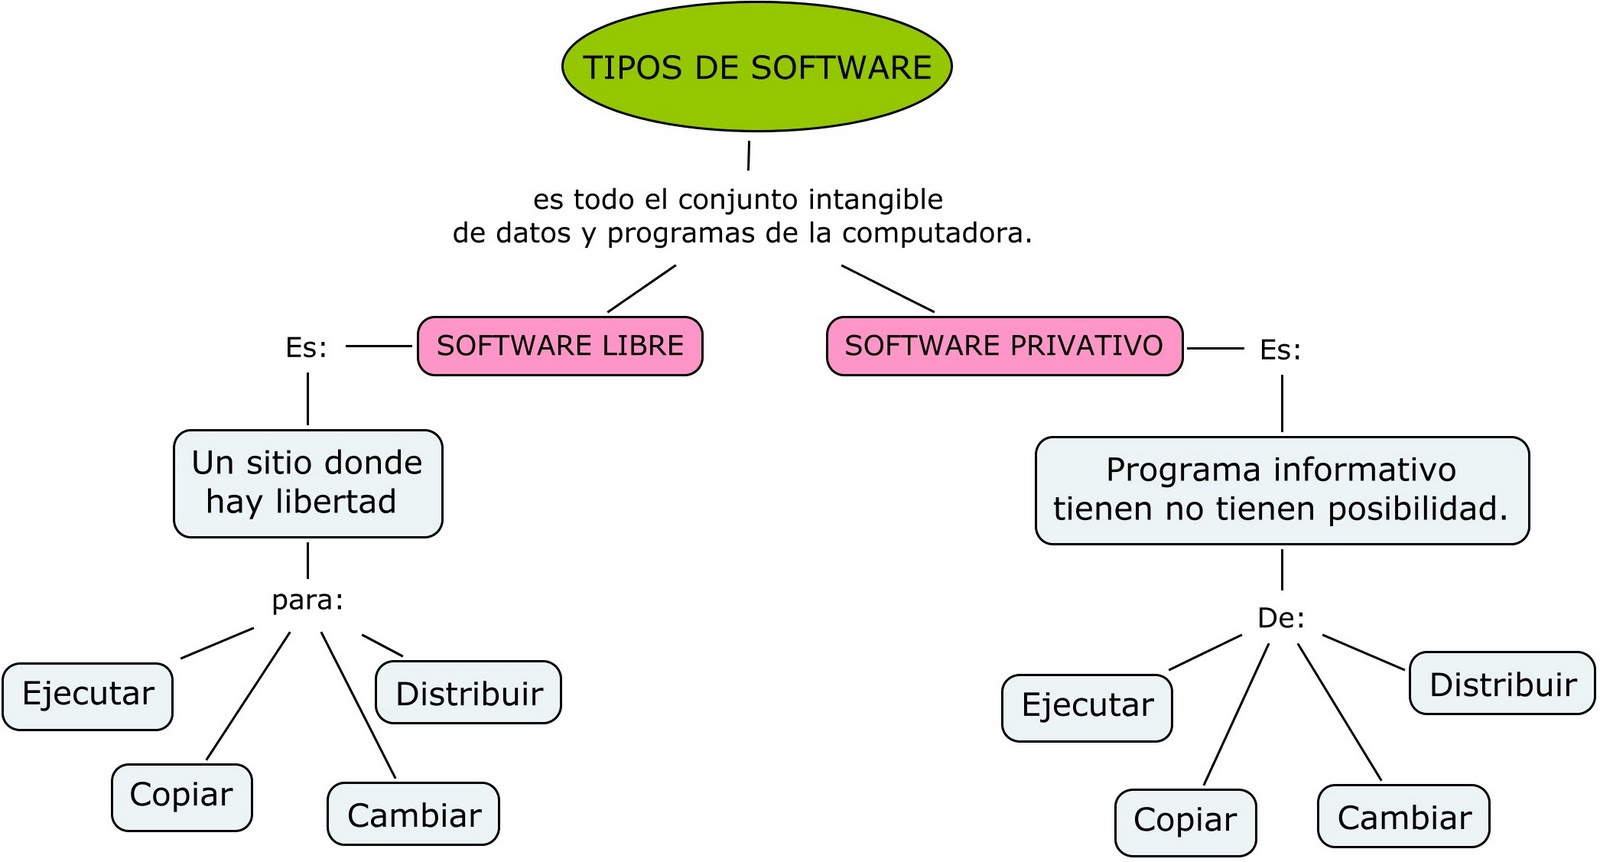 Software Privativo vrs Software Libre Tipos de Software